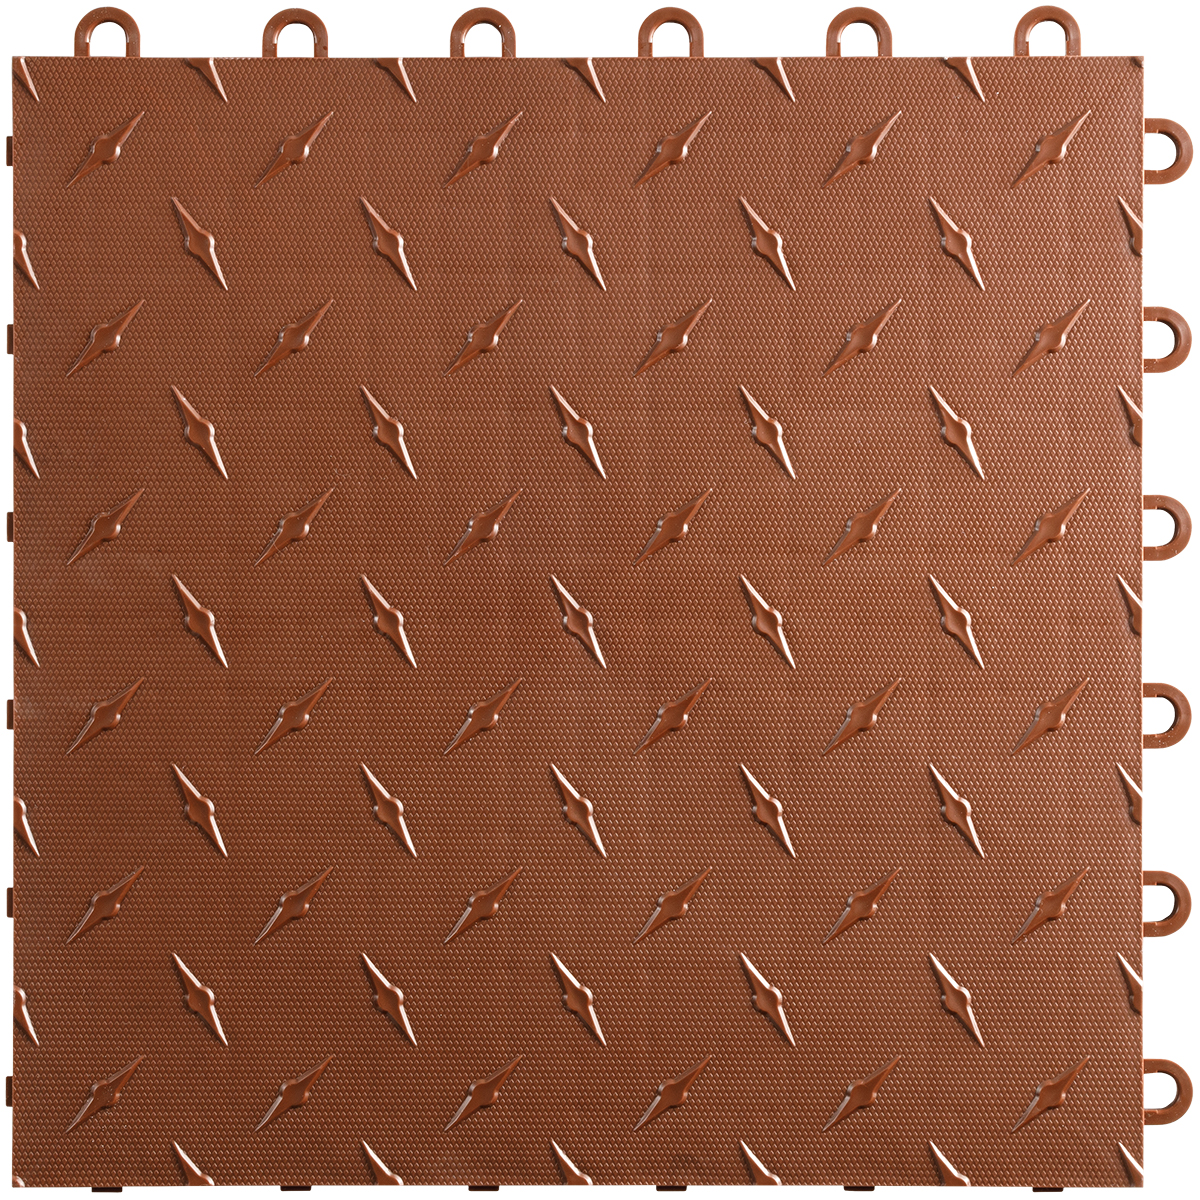 Diamondtrax Home Modular Tile - Chocolate Brown